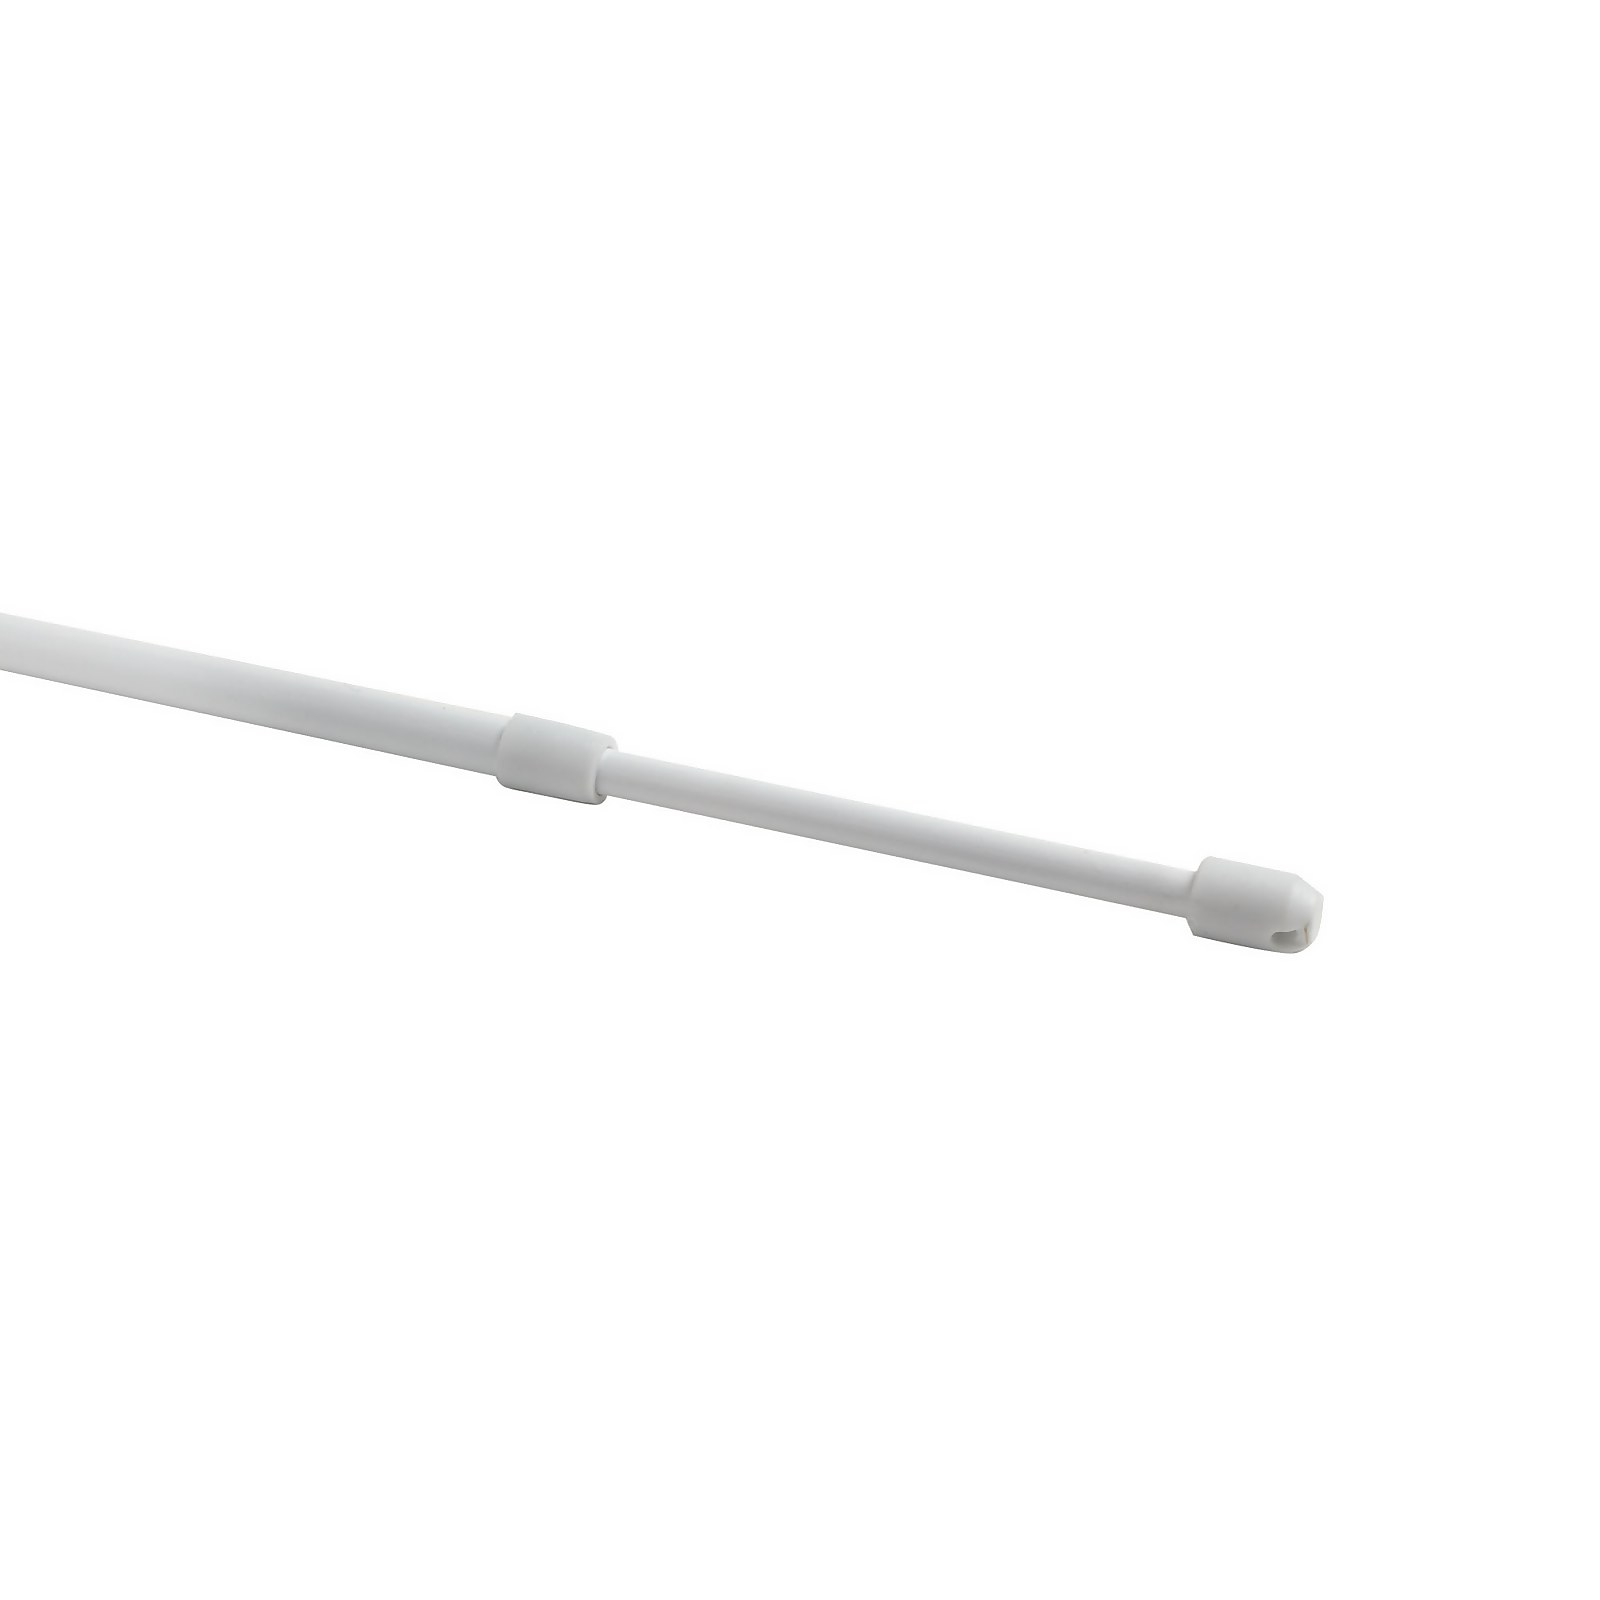 Lightweight Metal Extendable Net Curtain Rod - 40-60cm - White